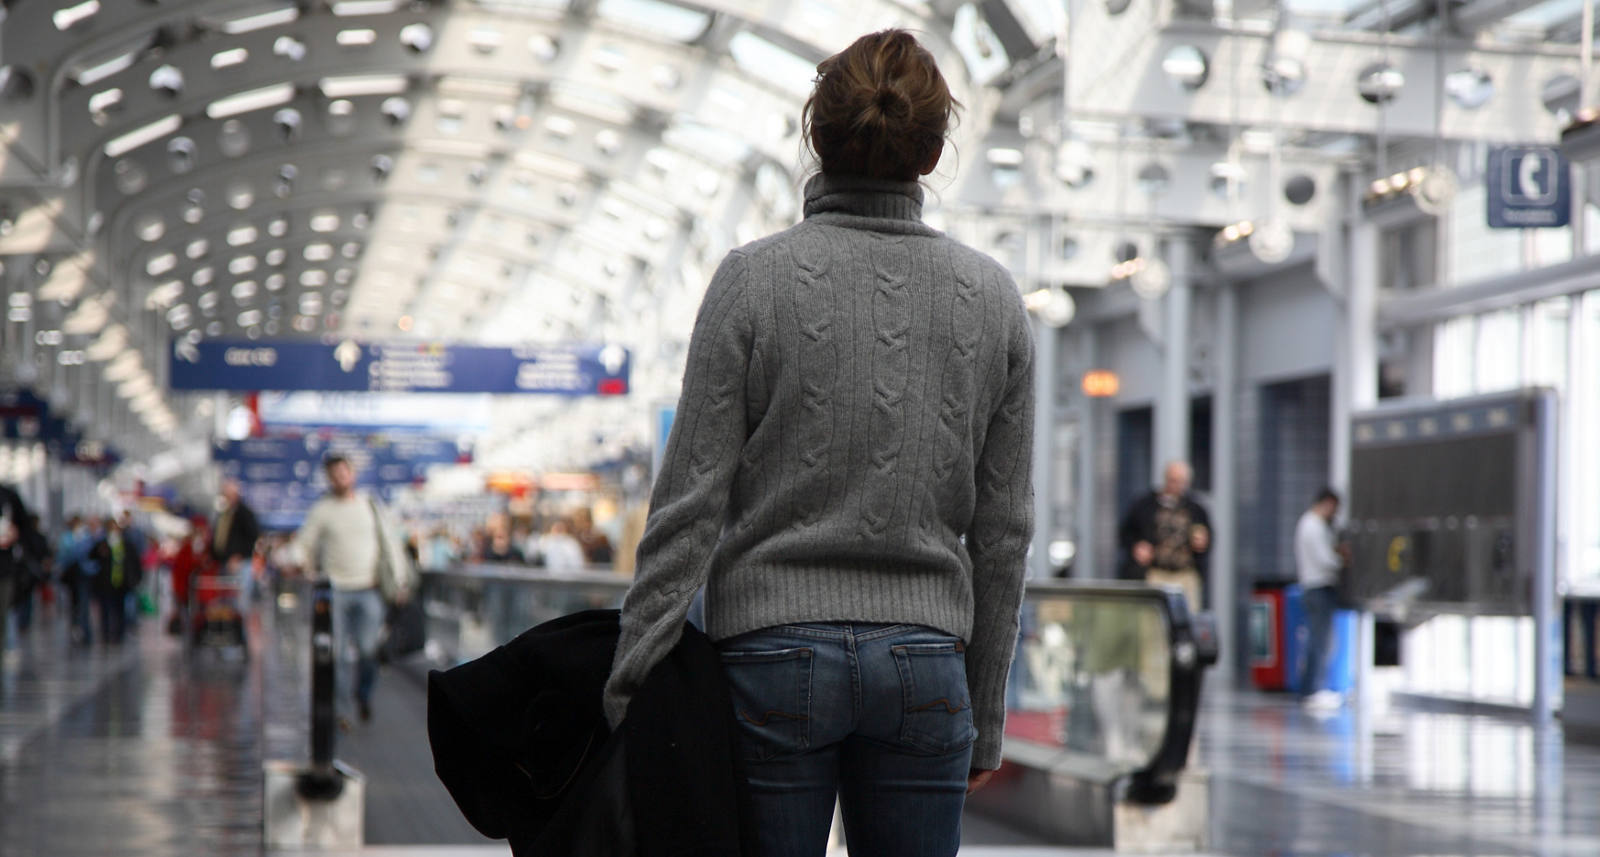 Une femme se trouve dans la foule à l’aéroport, une situation particulièrement stressante pour elle.